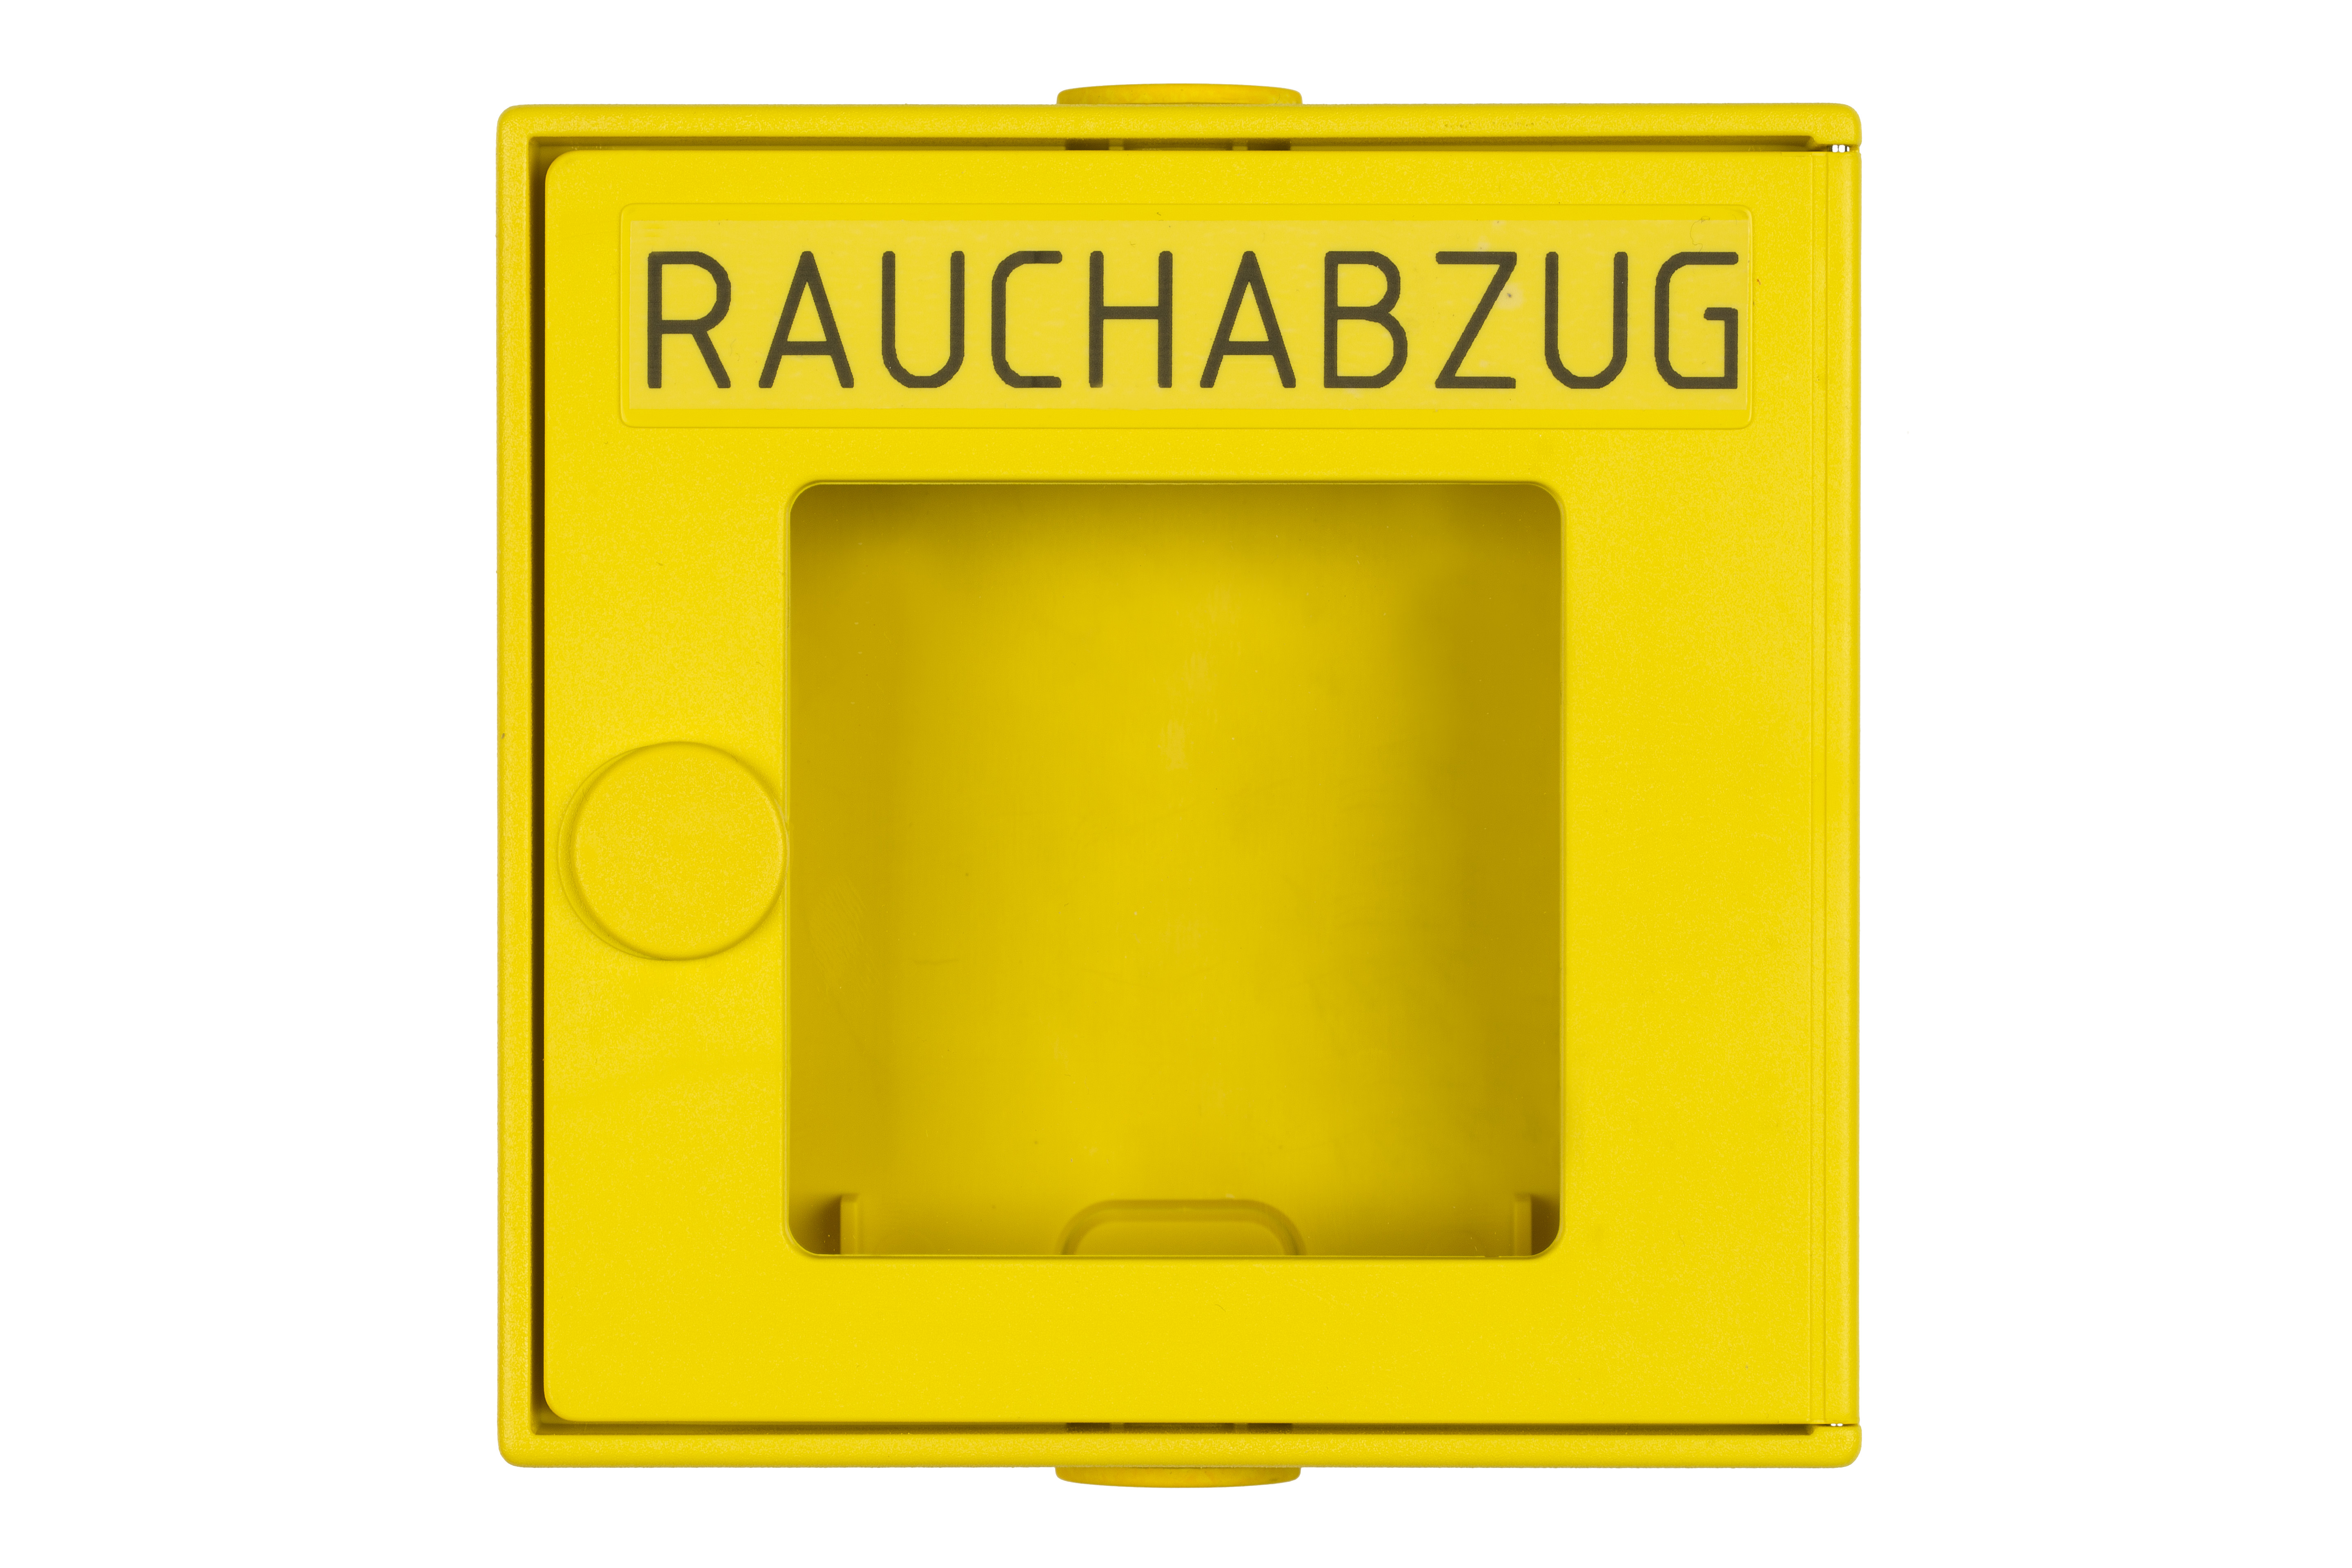 Leergehäuse in Alu für RWA-Taster RT-A   Farbe gelb, inkl. Glasscheibe